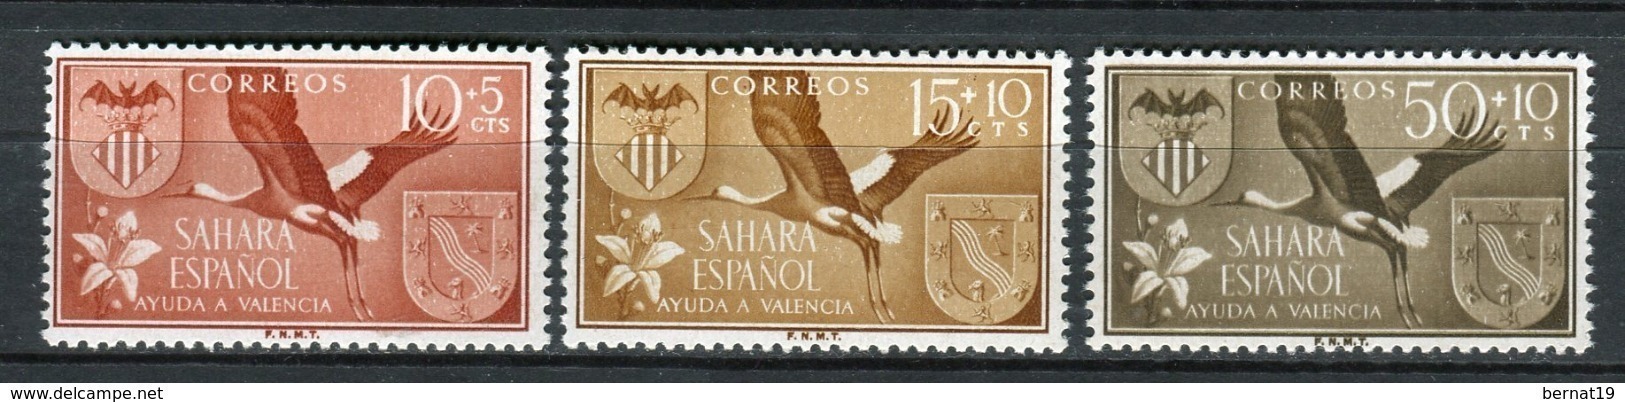 Sahara 1958. Edifil 146-48 ** MNH. - Spaanse Sahara